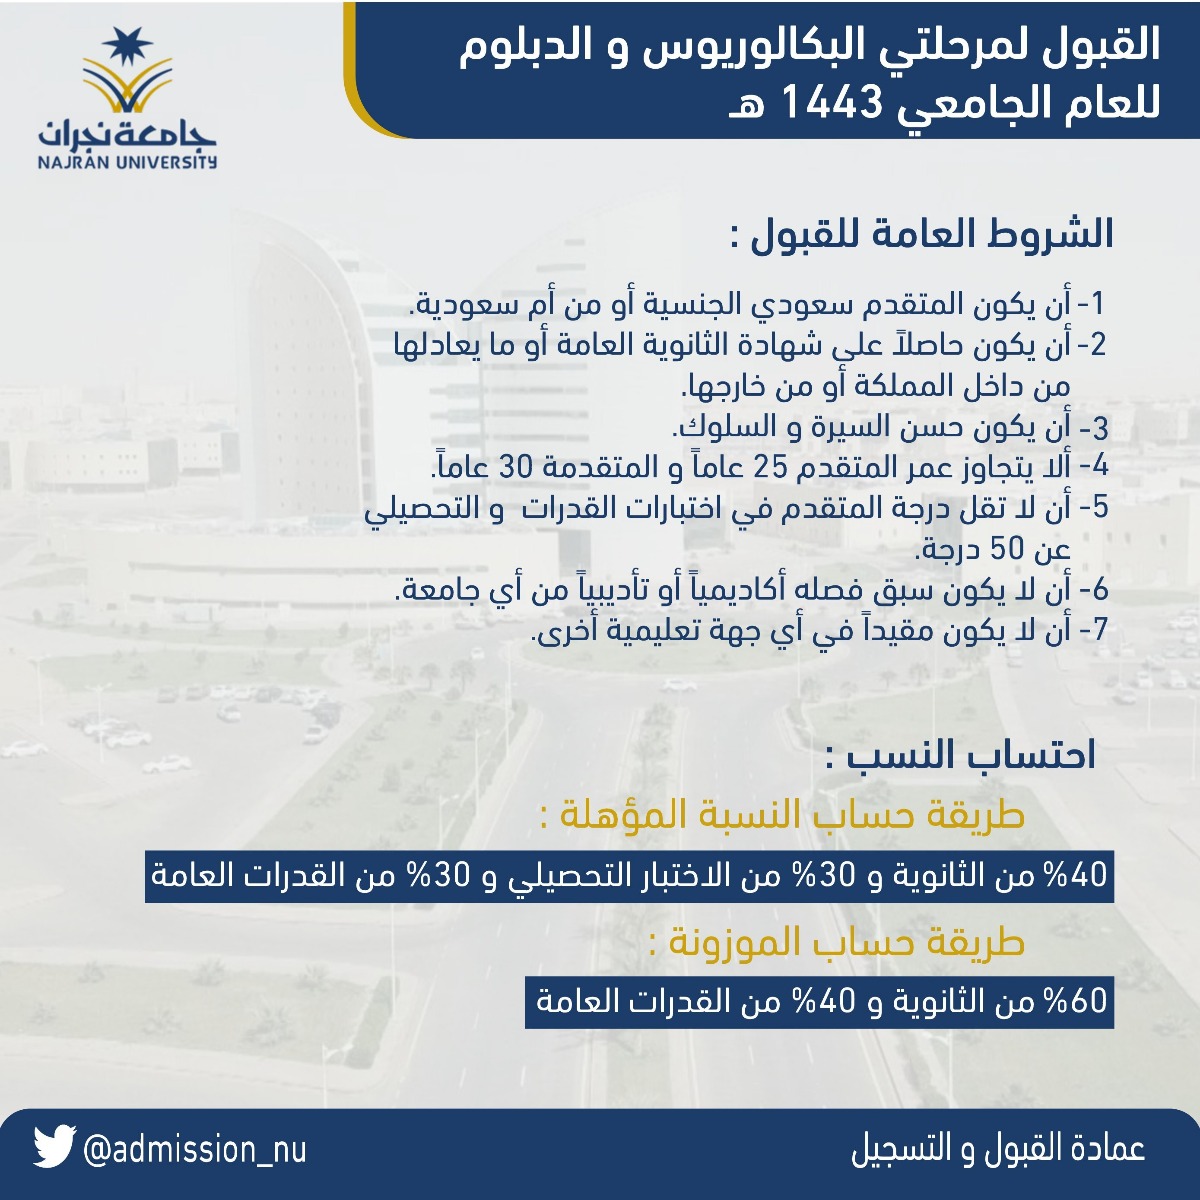 جامعة نجران تعلن مواعيد القبول للعام القادم Najran University